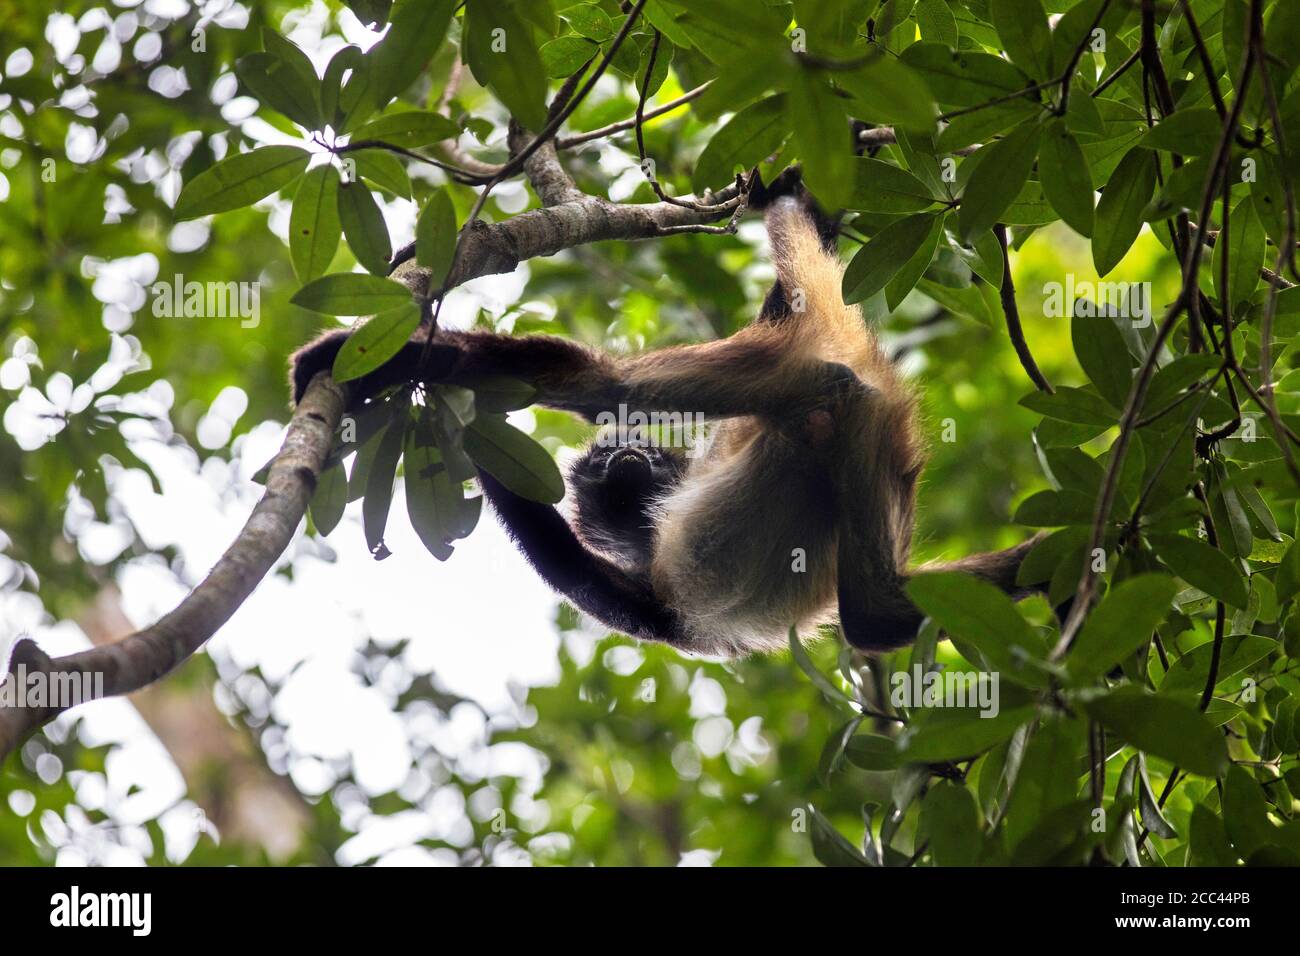 Singe araignée de Geoffroy / singe araignée main noire / singe araignée d'Amérique centrale (Ateles geoffroy) dans un arbre, Tikal, Flores, Guatemala Banque D'Images